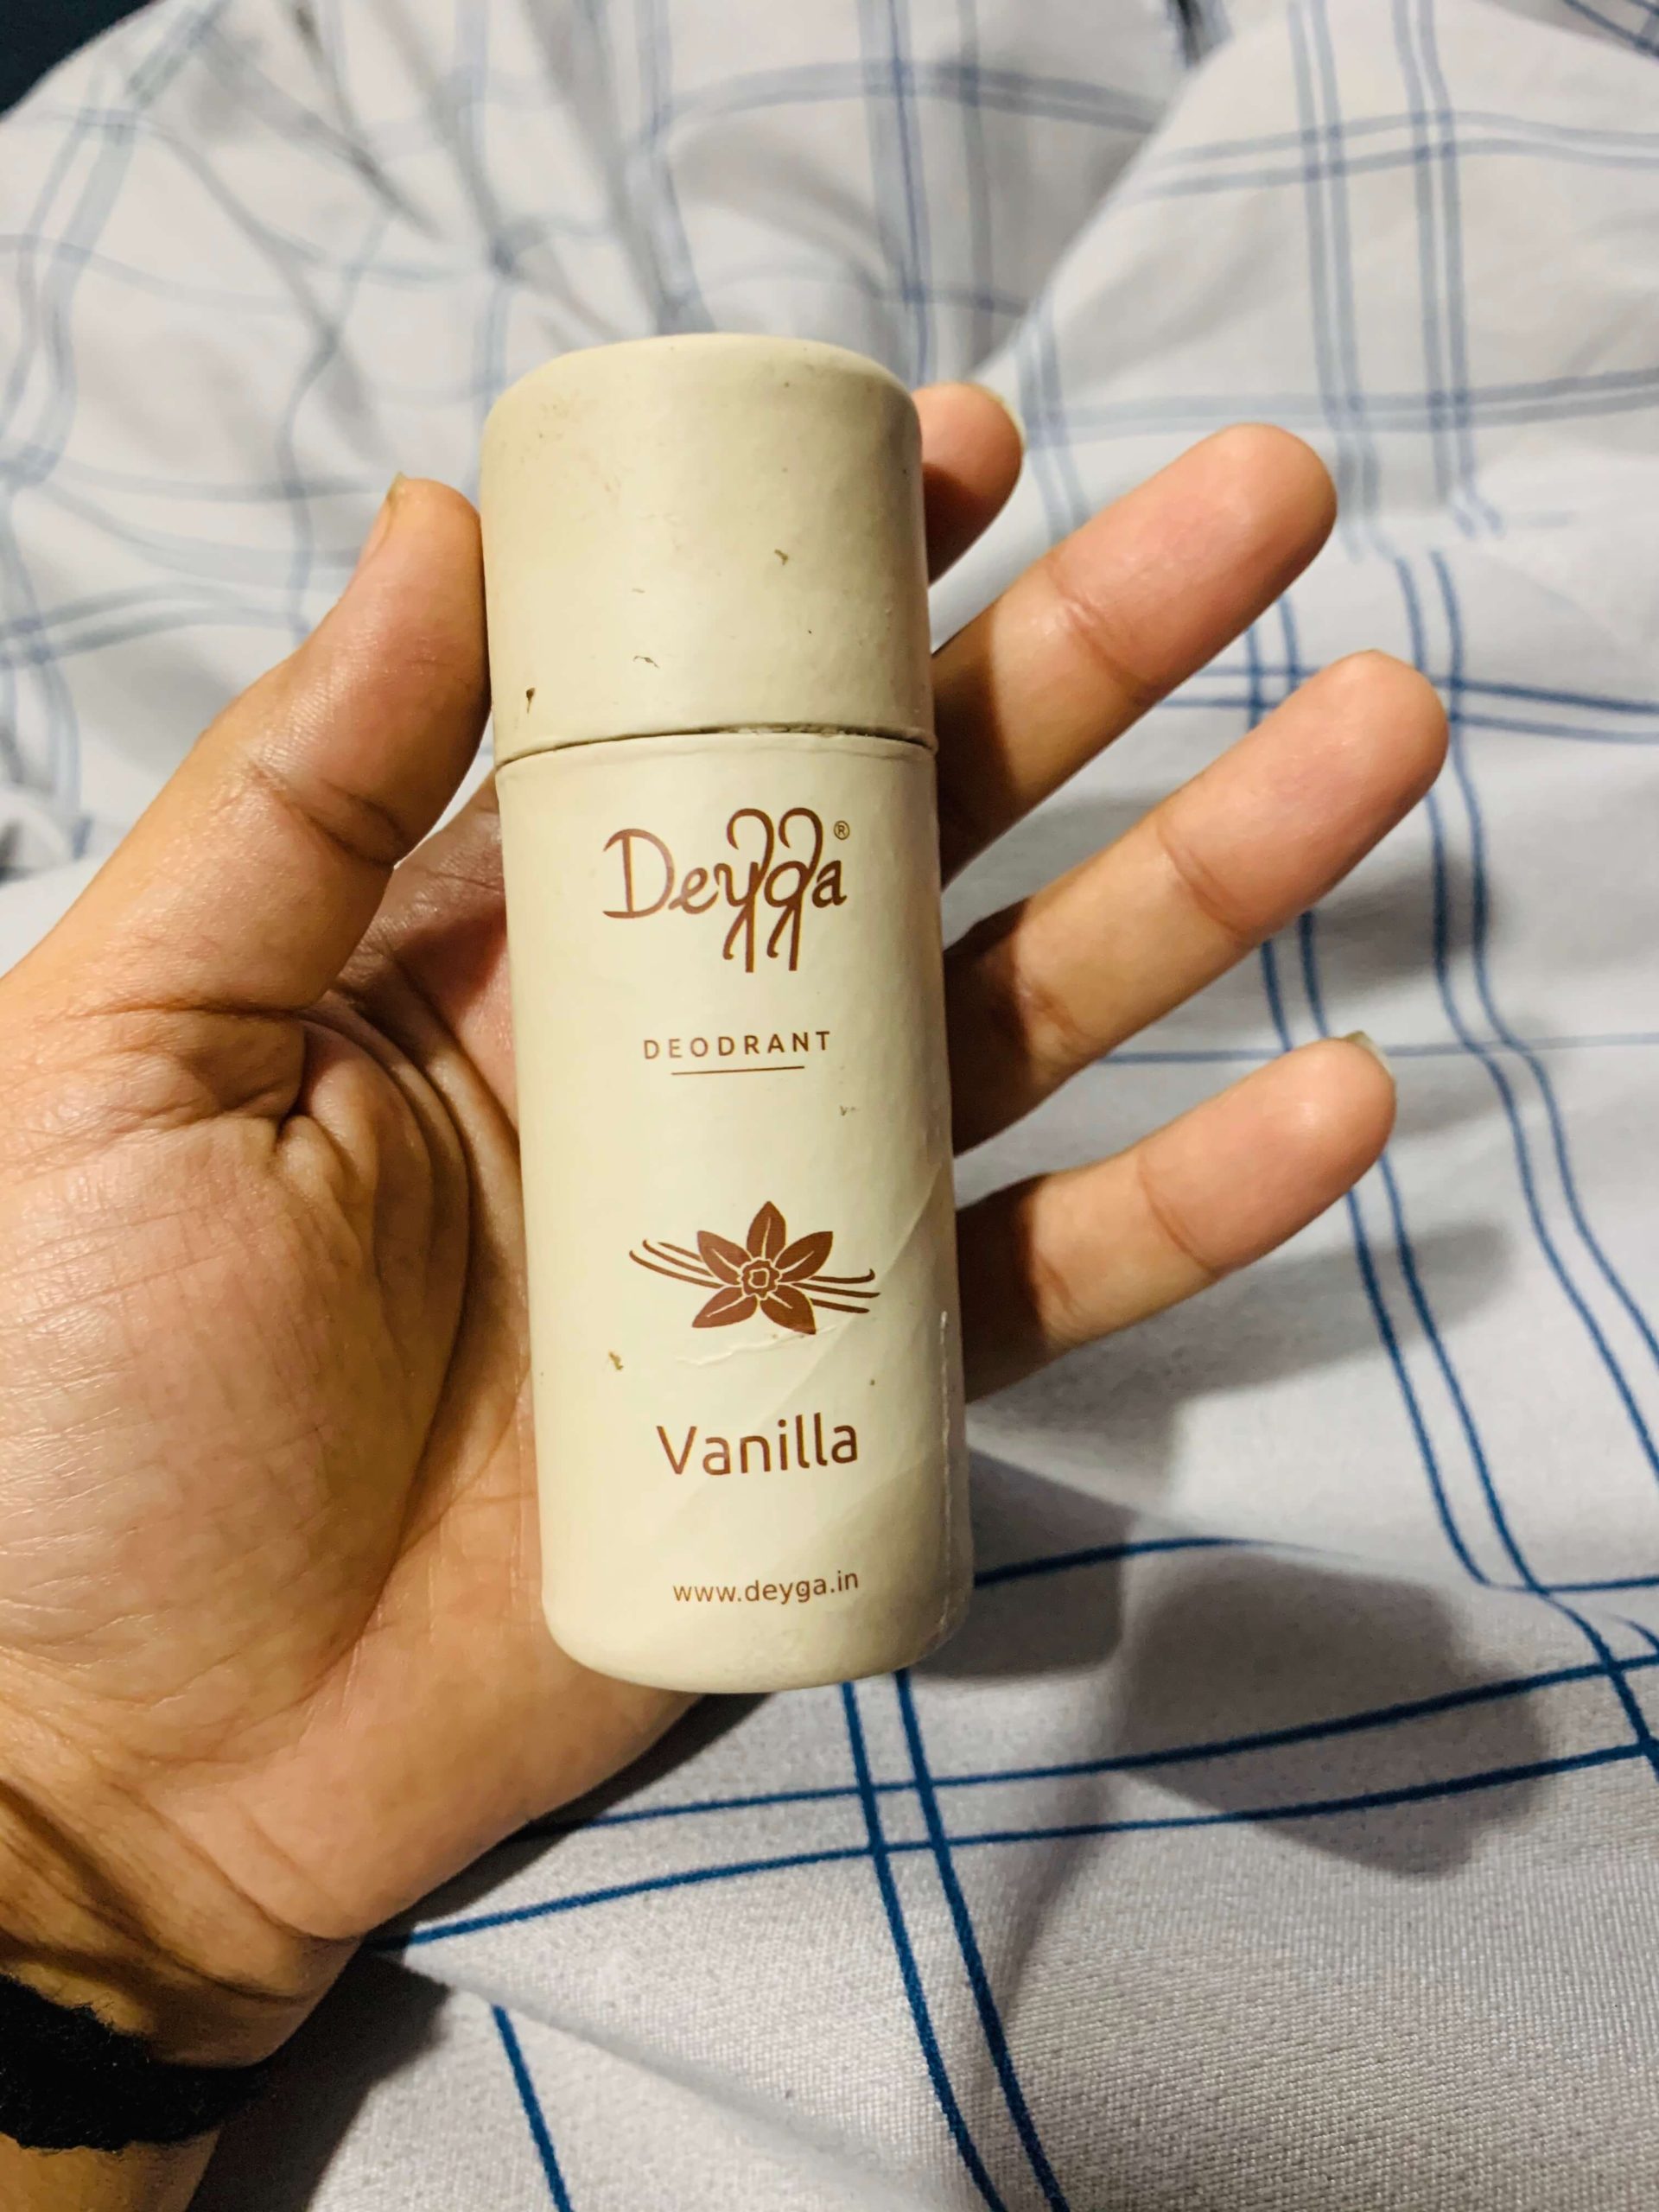 Deyga Brand's Vanilla Deodorant